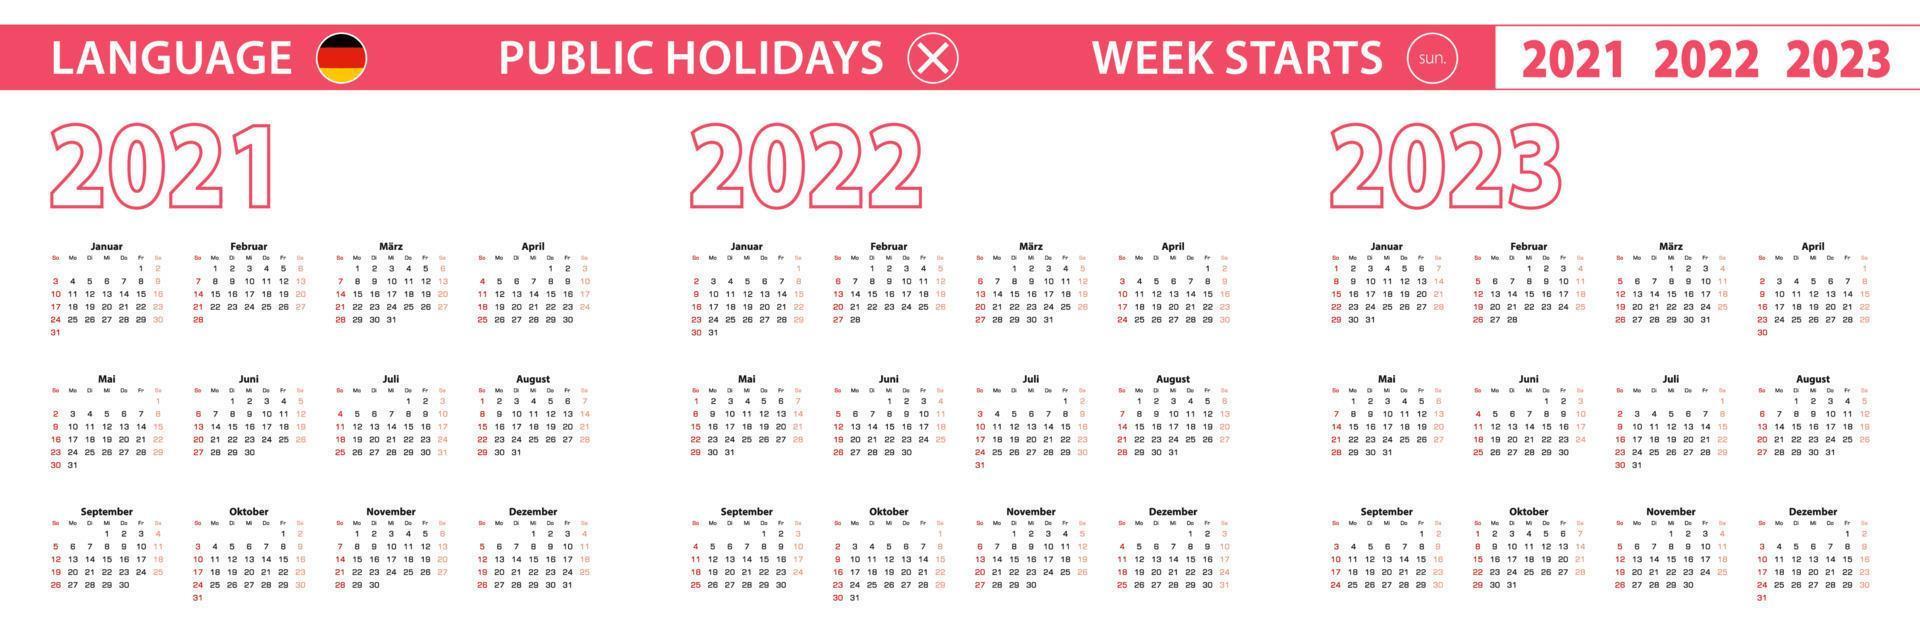 Calendario vettoriale anno 2021, 2022, 2023 in lingua tedesca, la settimana inizia di domenica.